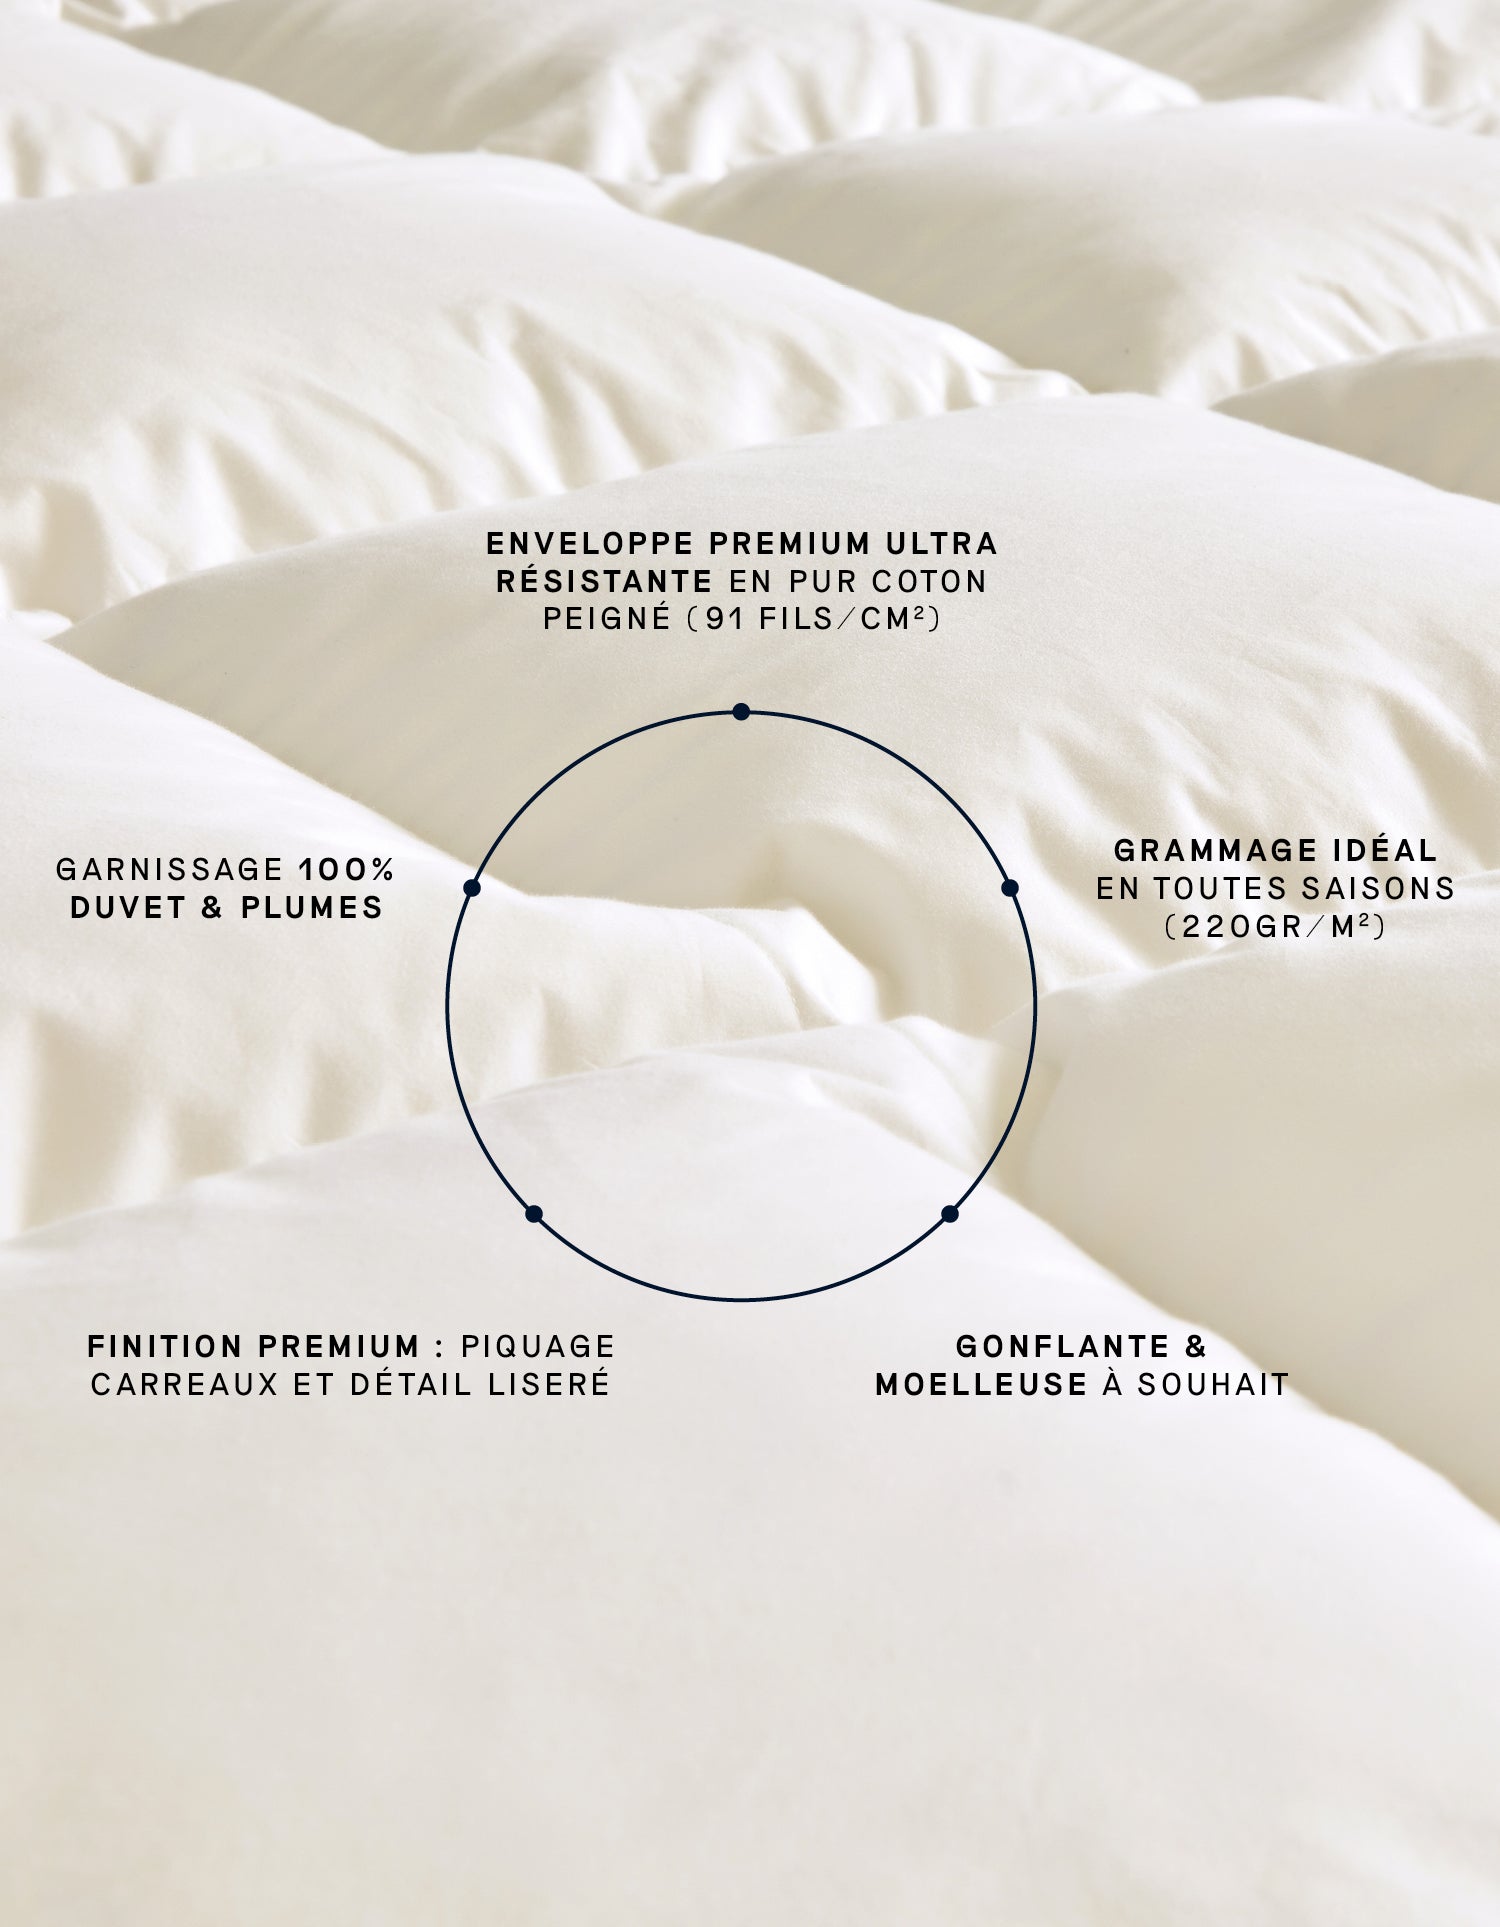 La paire de protège oreillers 100% coton